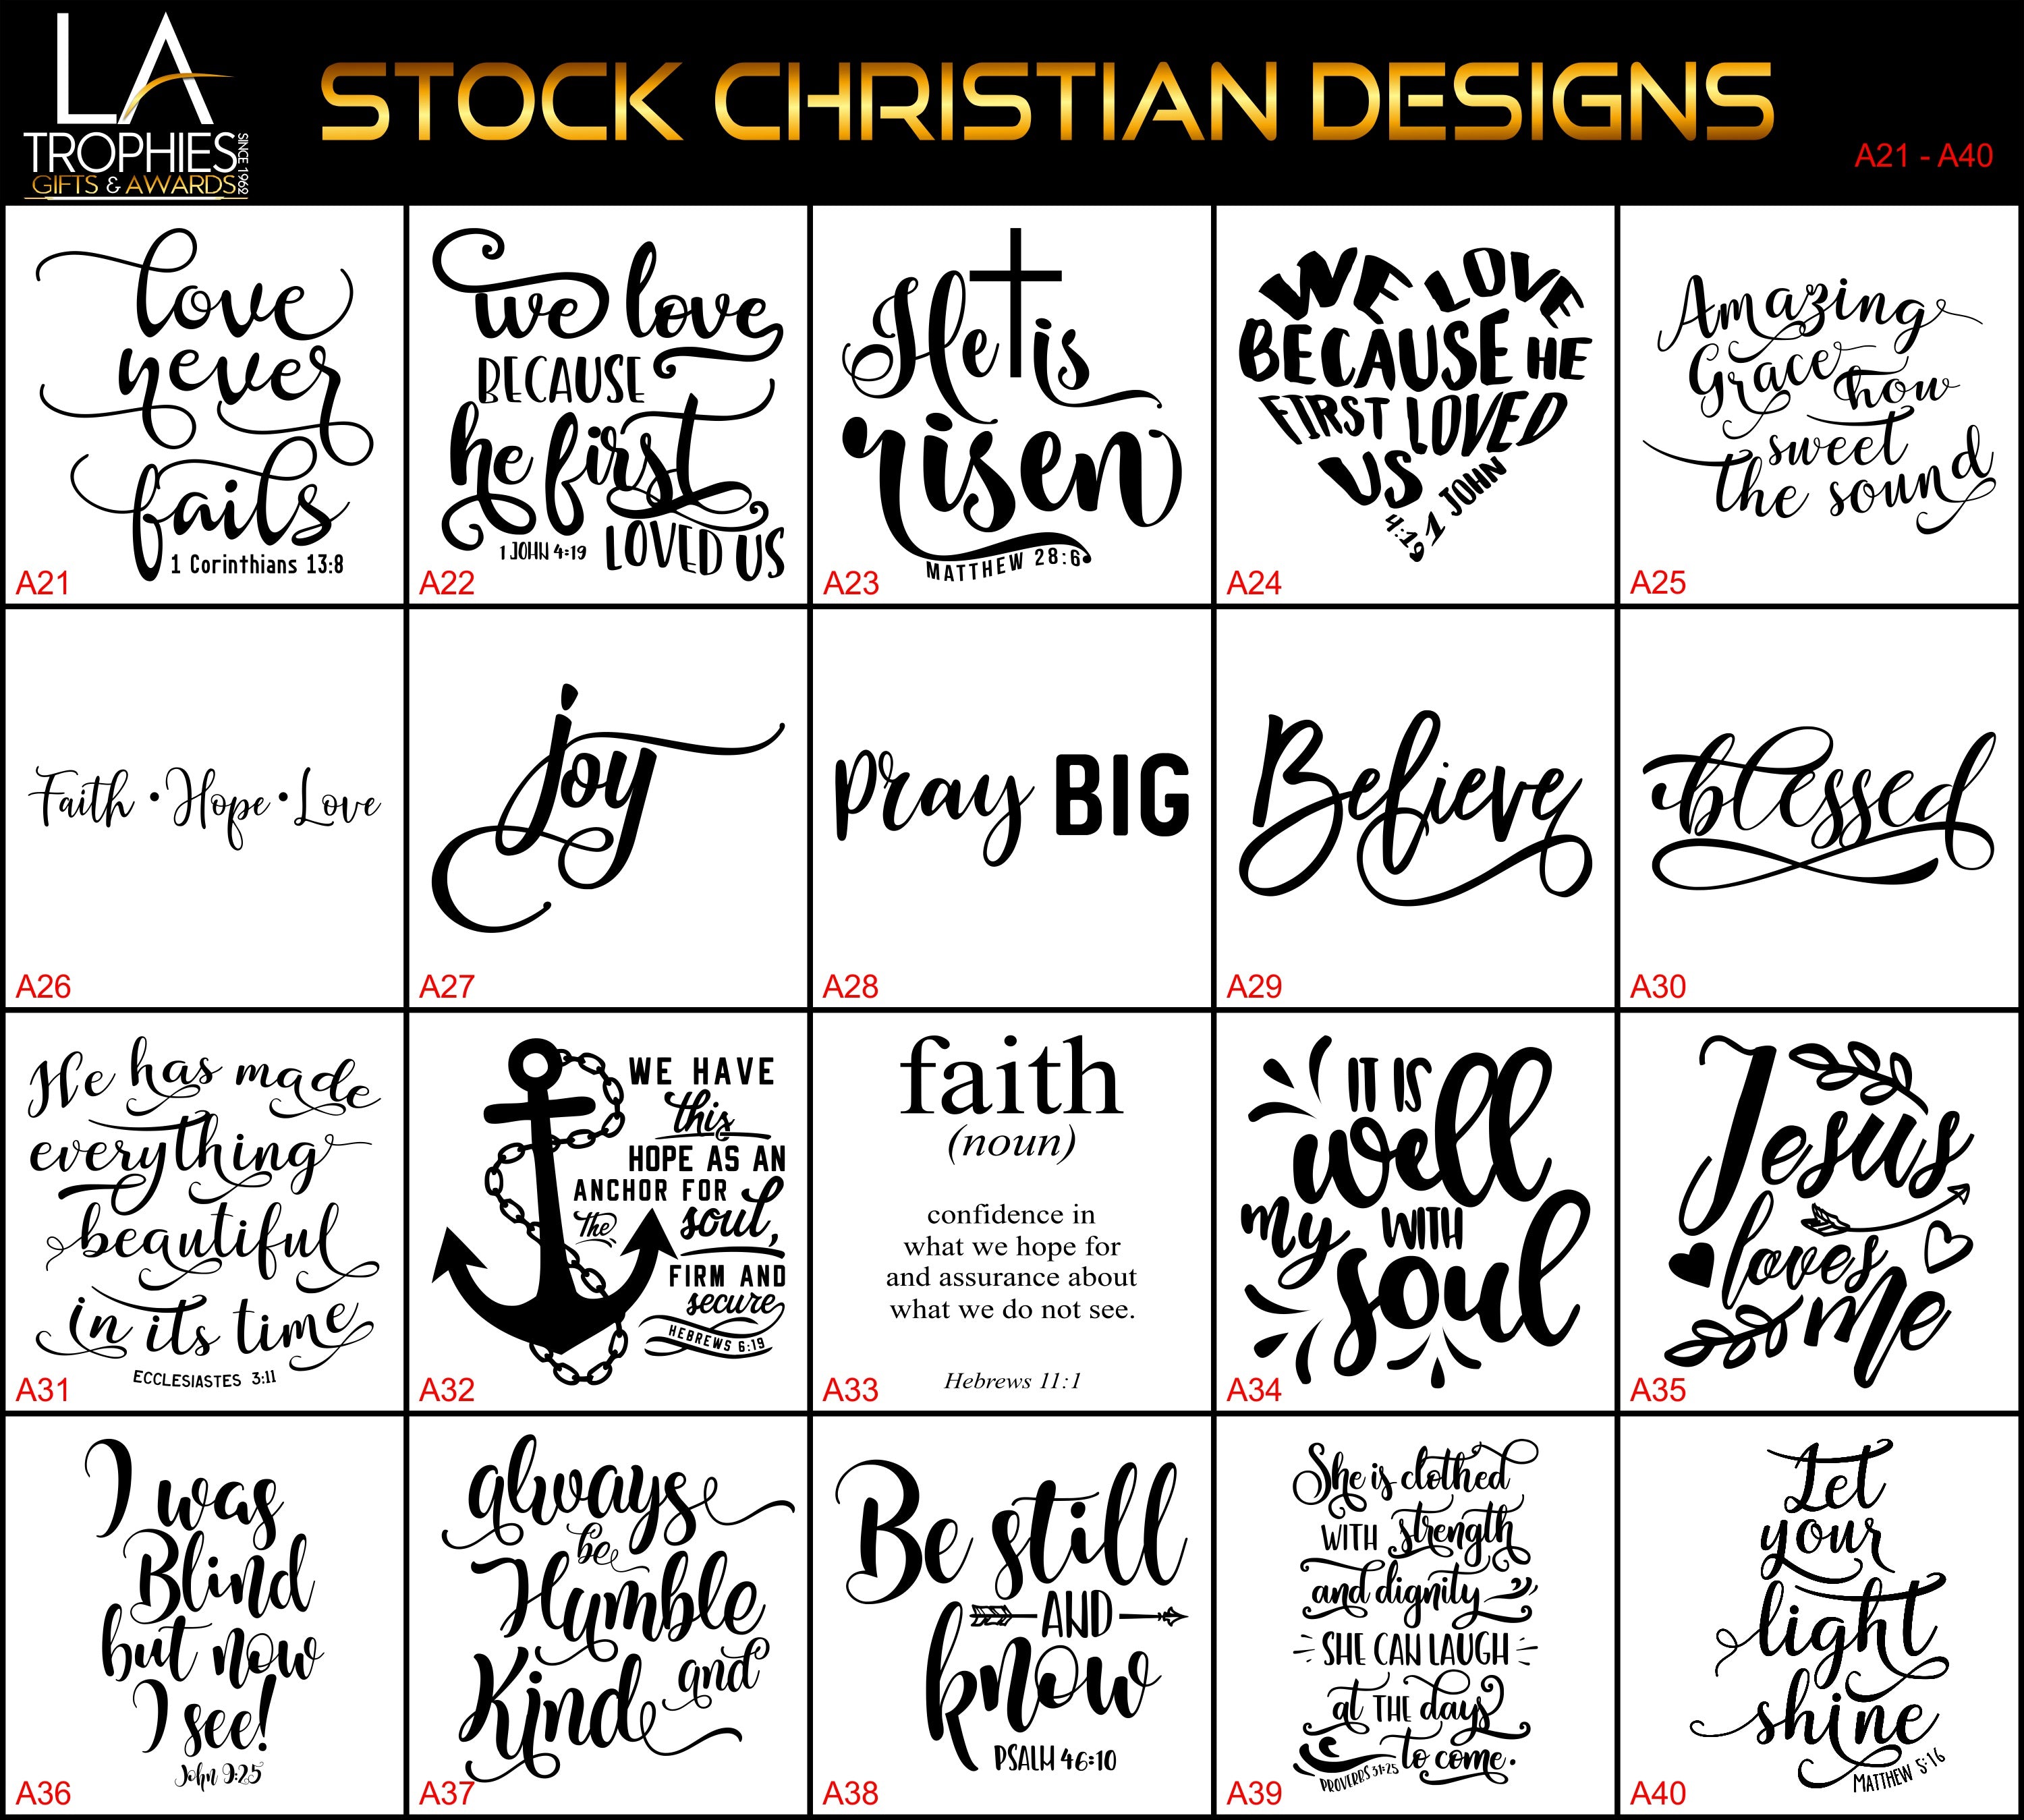 A21-A40 - Stock Christian Designs LA Trophies